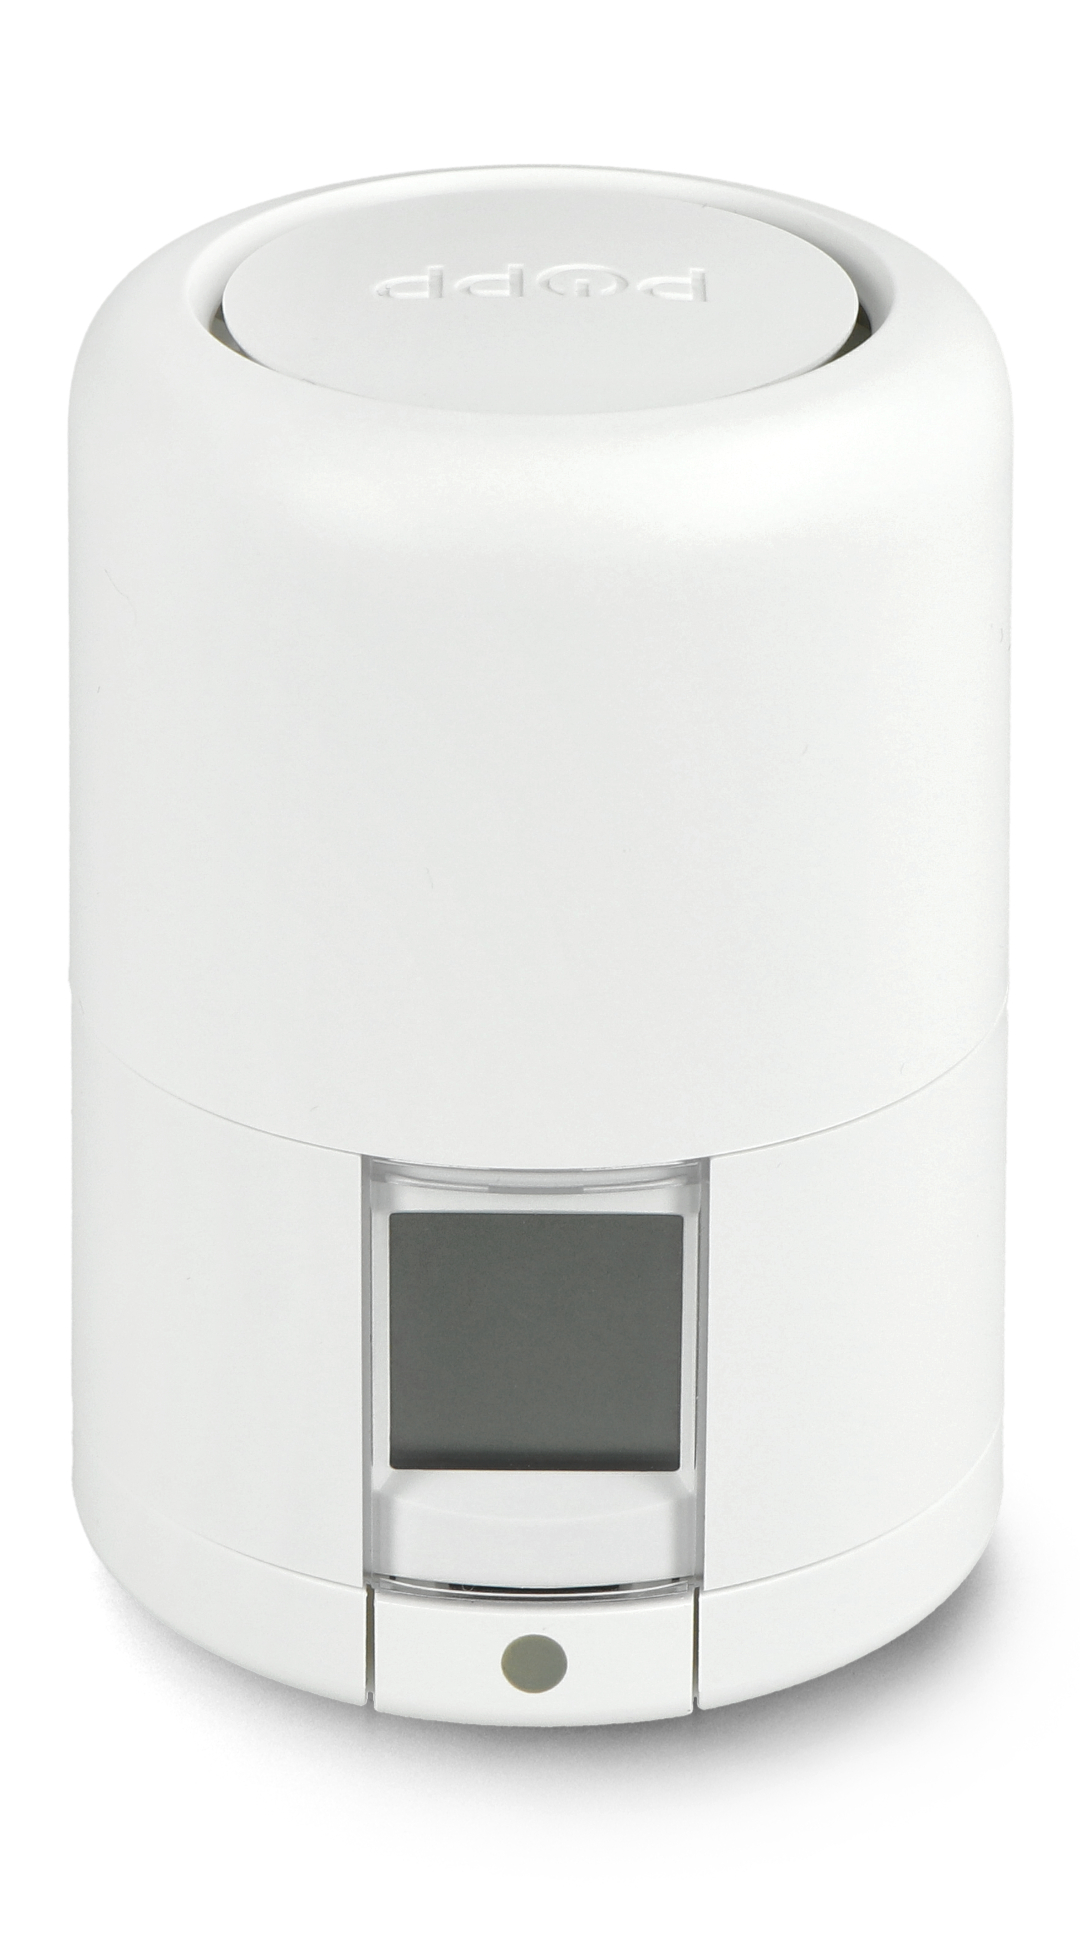 Tuya - ZigBee smart thermostat - Moes ZTRV-368 Botland - Robotic Shop